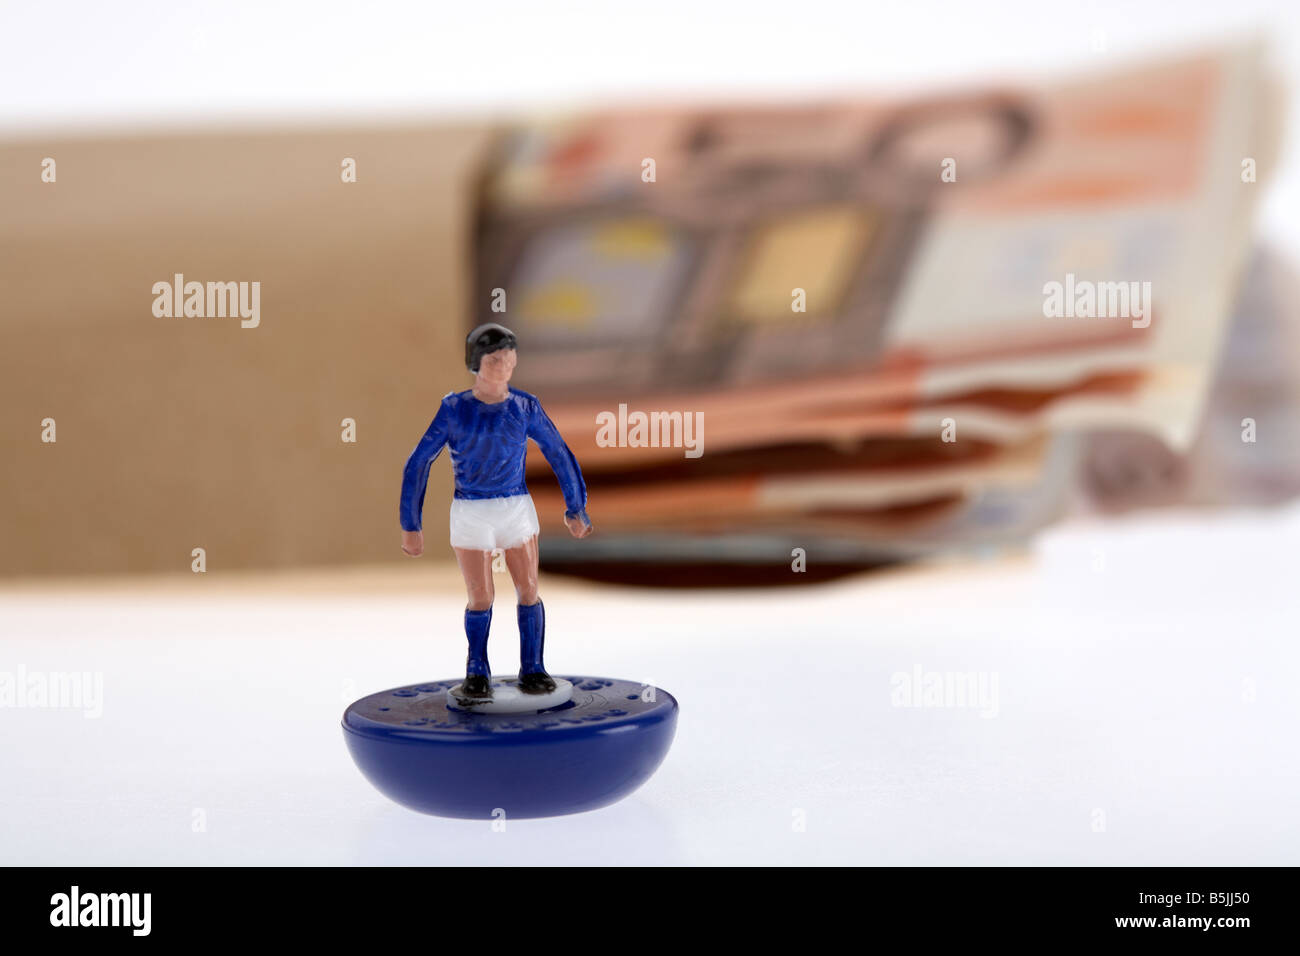 Bündel von 50 Euro-Banknoten-Bargeld in einem braunen Papierumschlag hinter Spielzeug Fußballer Stockfoto